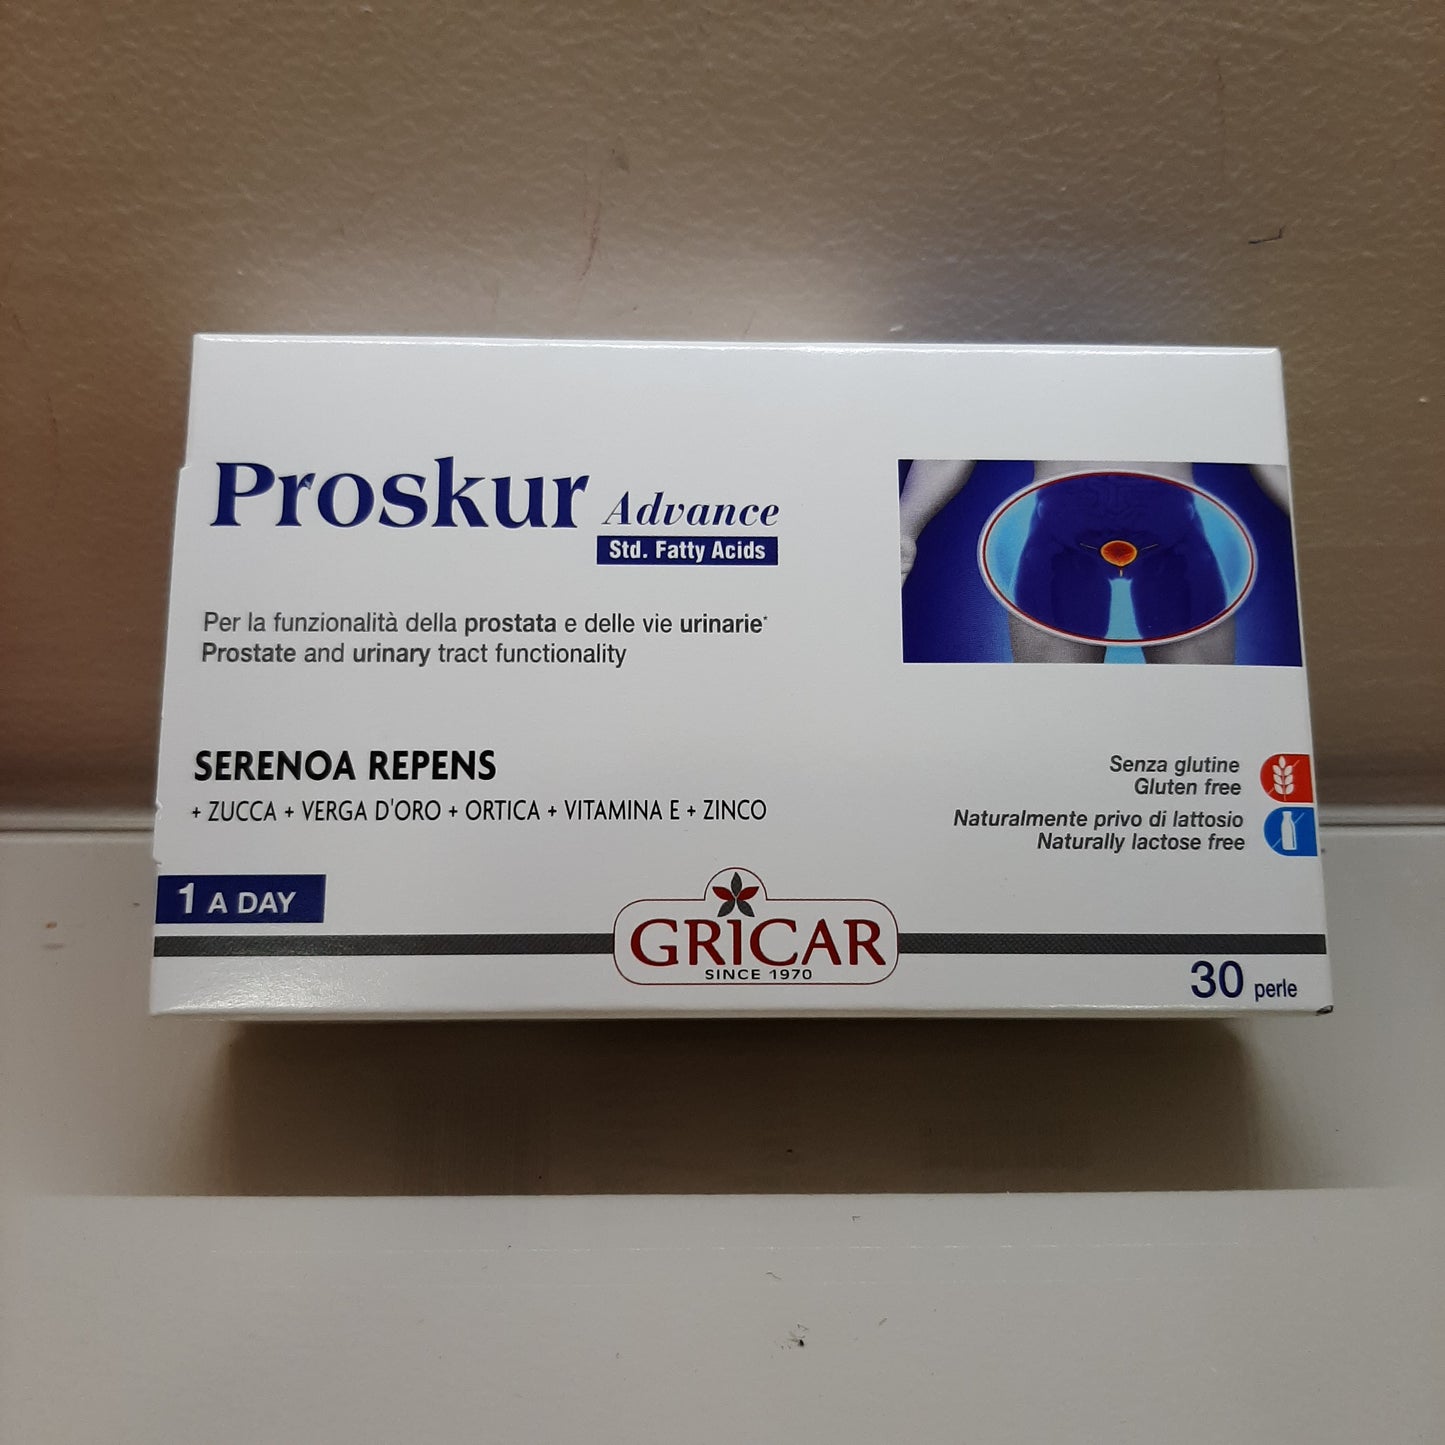 Proskur advance funzionalità prostata e vie urinarie 30 perle scad 12/2024 peso netto27,39 g. Gricar